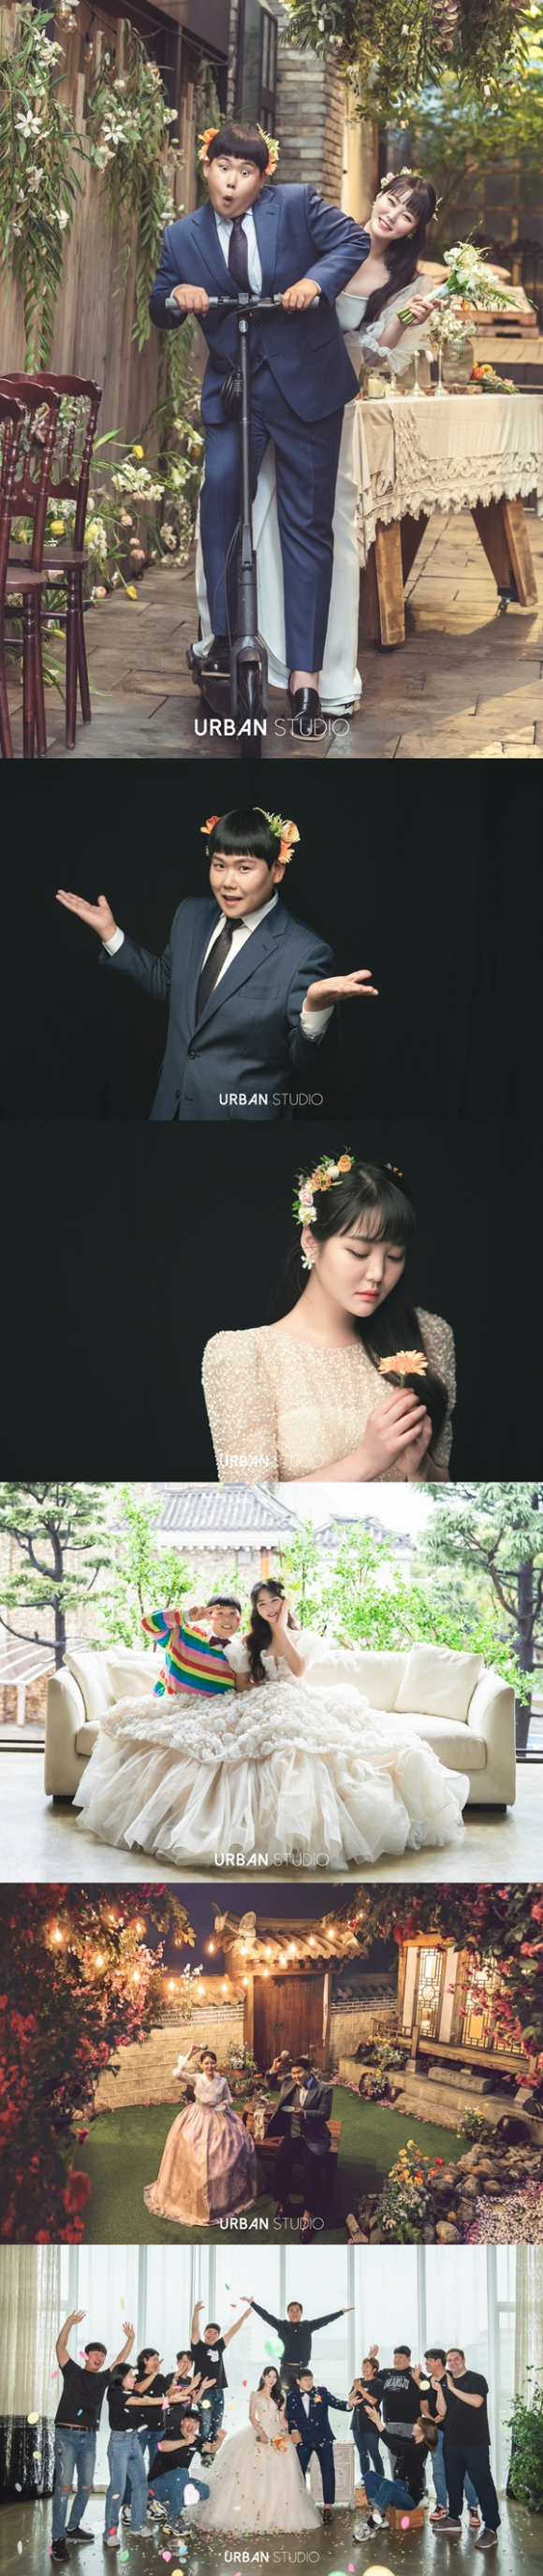 코미디언 김수영이 내달 결혼한다. 